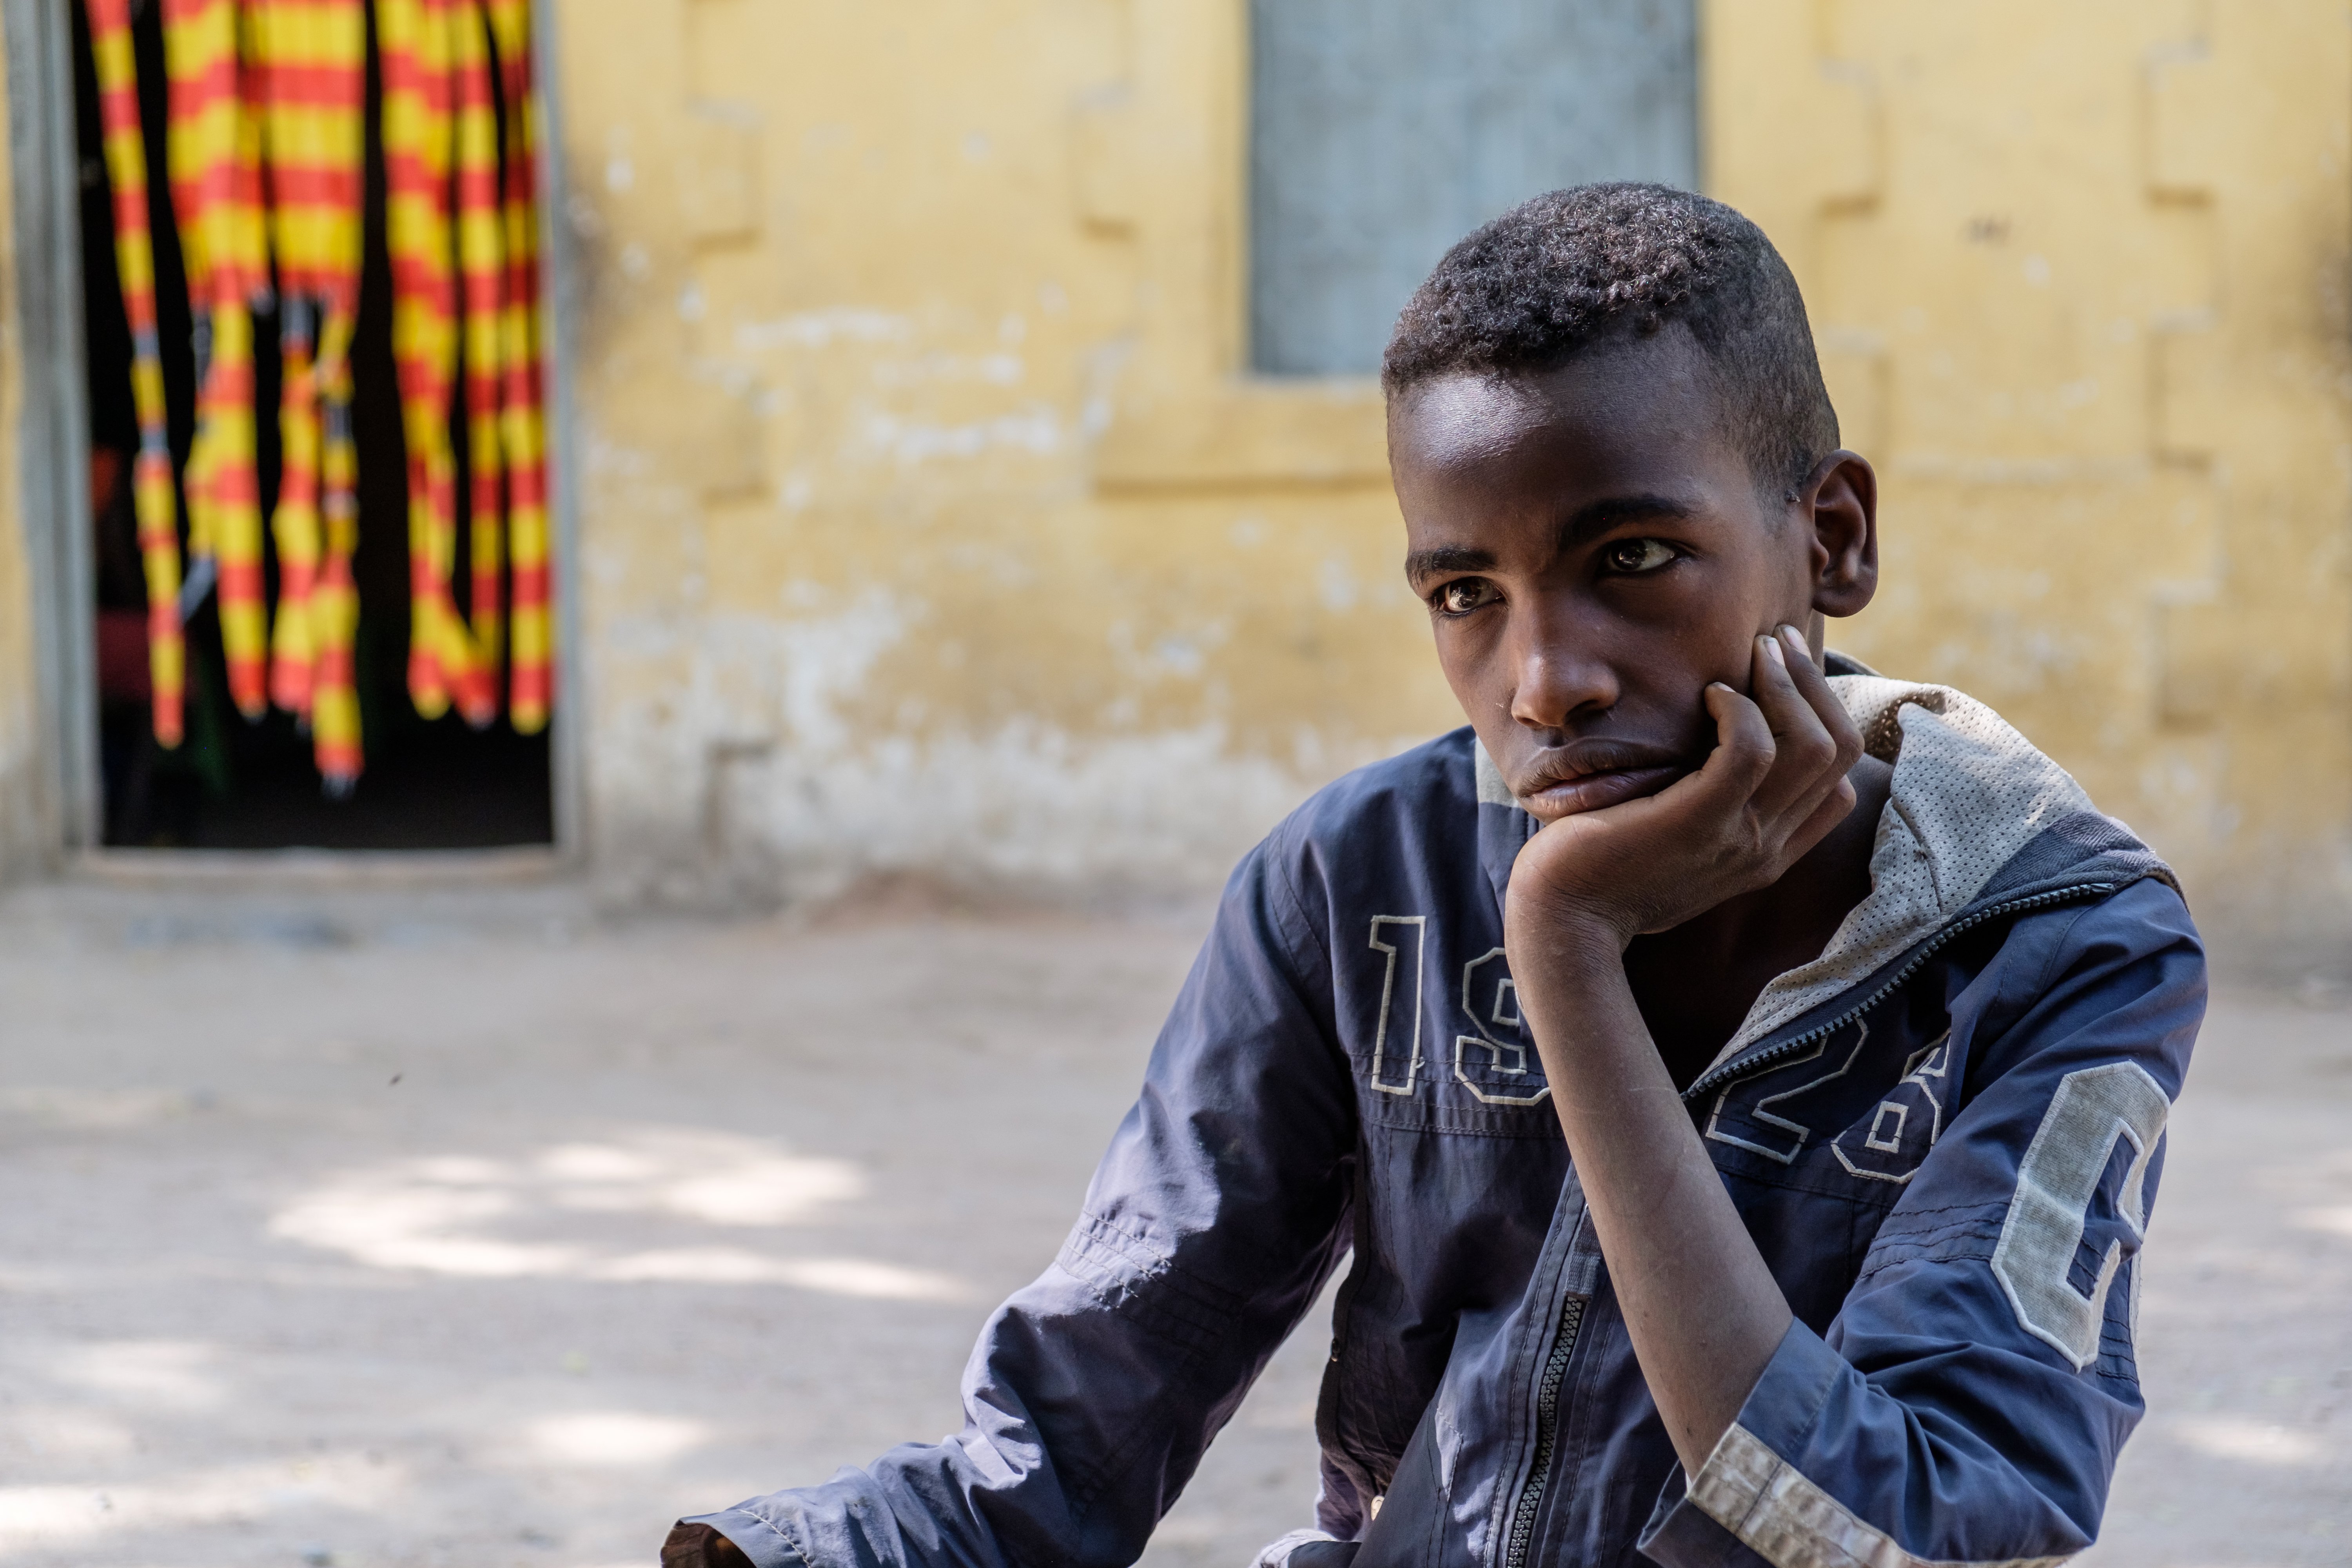 Adolescent boy in Dire Dawa, Ethiopia